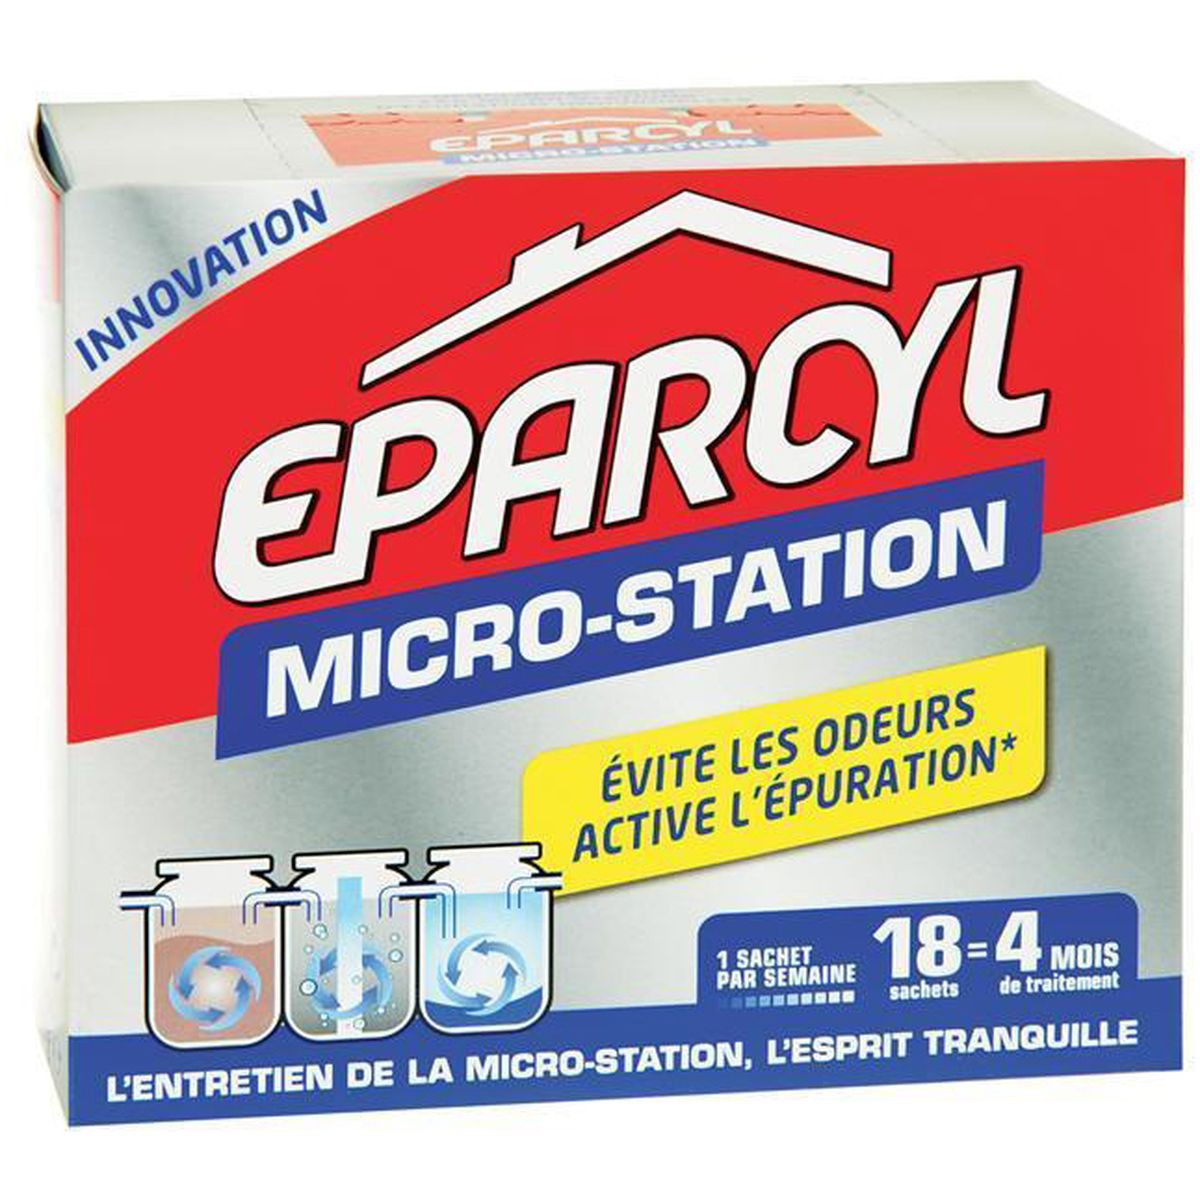 Boite de 22 sachets d'Eparcyl micro-station. - Rouen - 76000 - Matériel pas  cher d'occasion - Vivastreet - 112041212